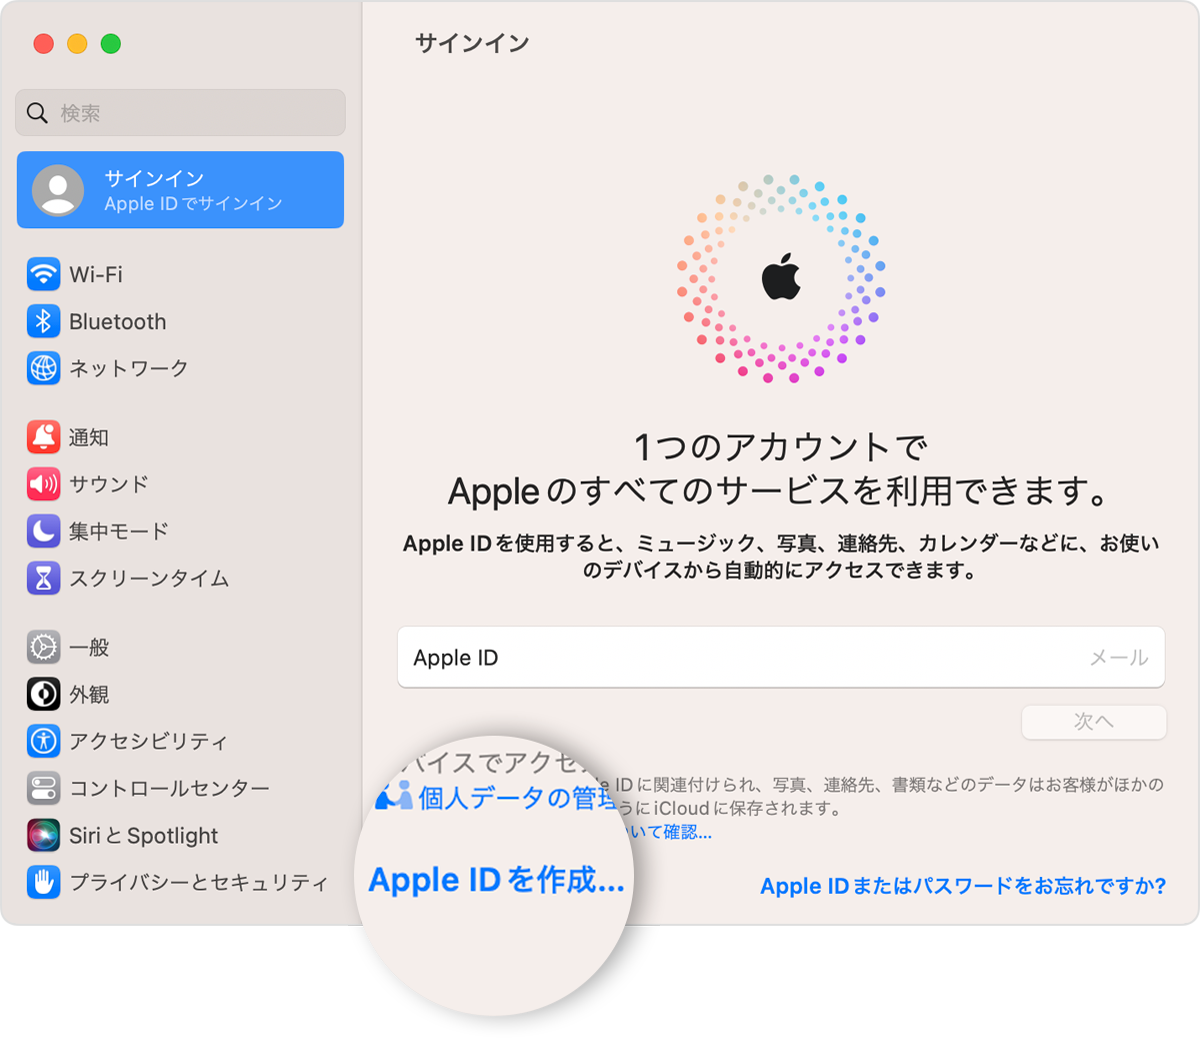 Mac の「システム設定」で Apple ID を作成する